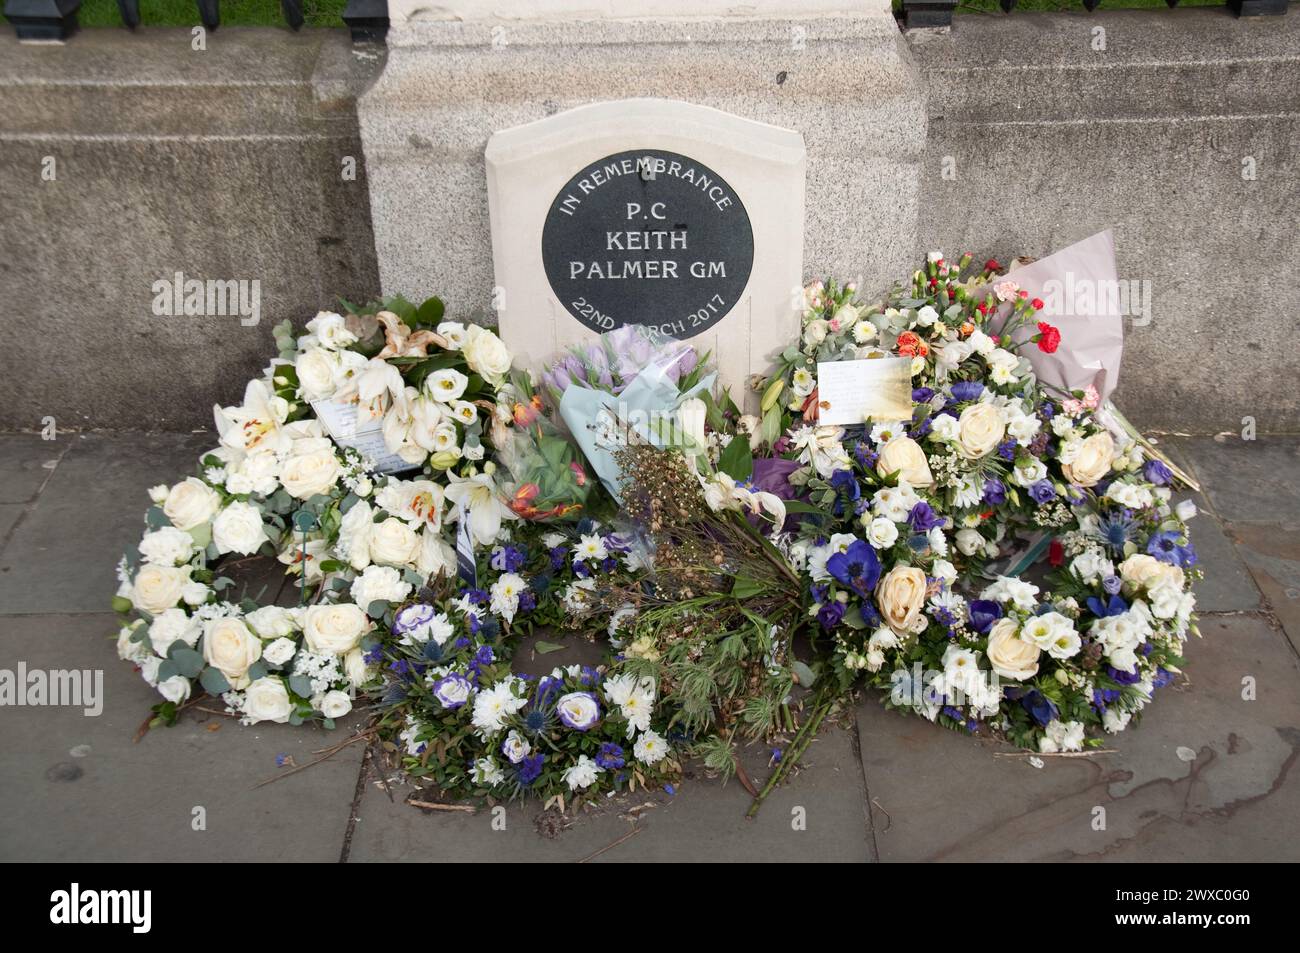 Blumen wurden zum Gedenken an PC Keith Palmer vor dem Parlamentsgebäude, Parliament Square, City of Westminster, London, Großbritannien, gelegt Stockfoto